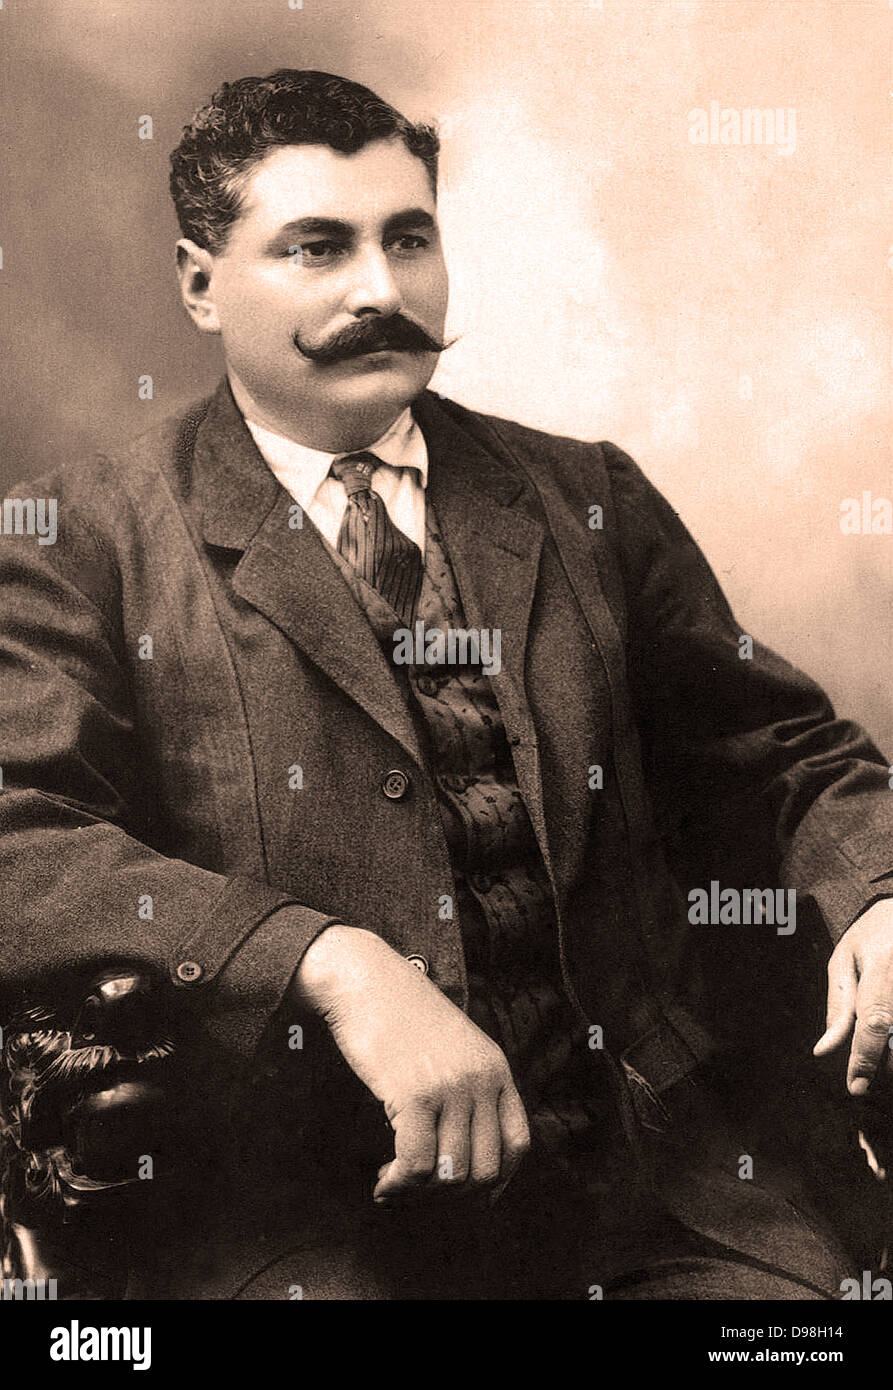 Eulalio Gutiérrez Ortiz (Febbraio 2, 1881 - Agosto 12, 1939) è stato eletto Presidente provvisorio del Messico durante la convenzione di Aguascalientes e ha condotto il paese per un paio di mesi tra il 6 novembre 1914 e 16 gennaio 1915. Foto Stock